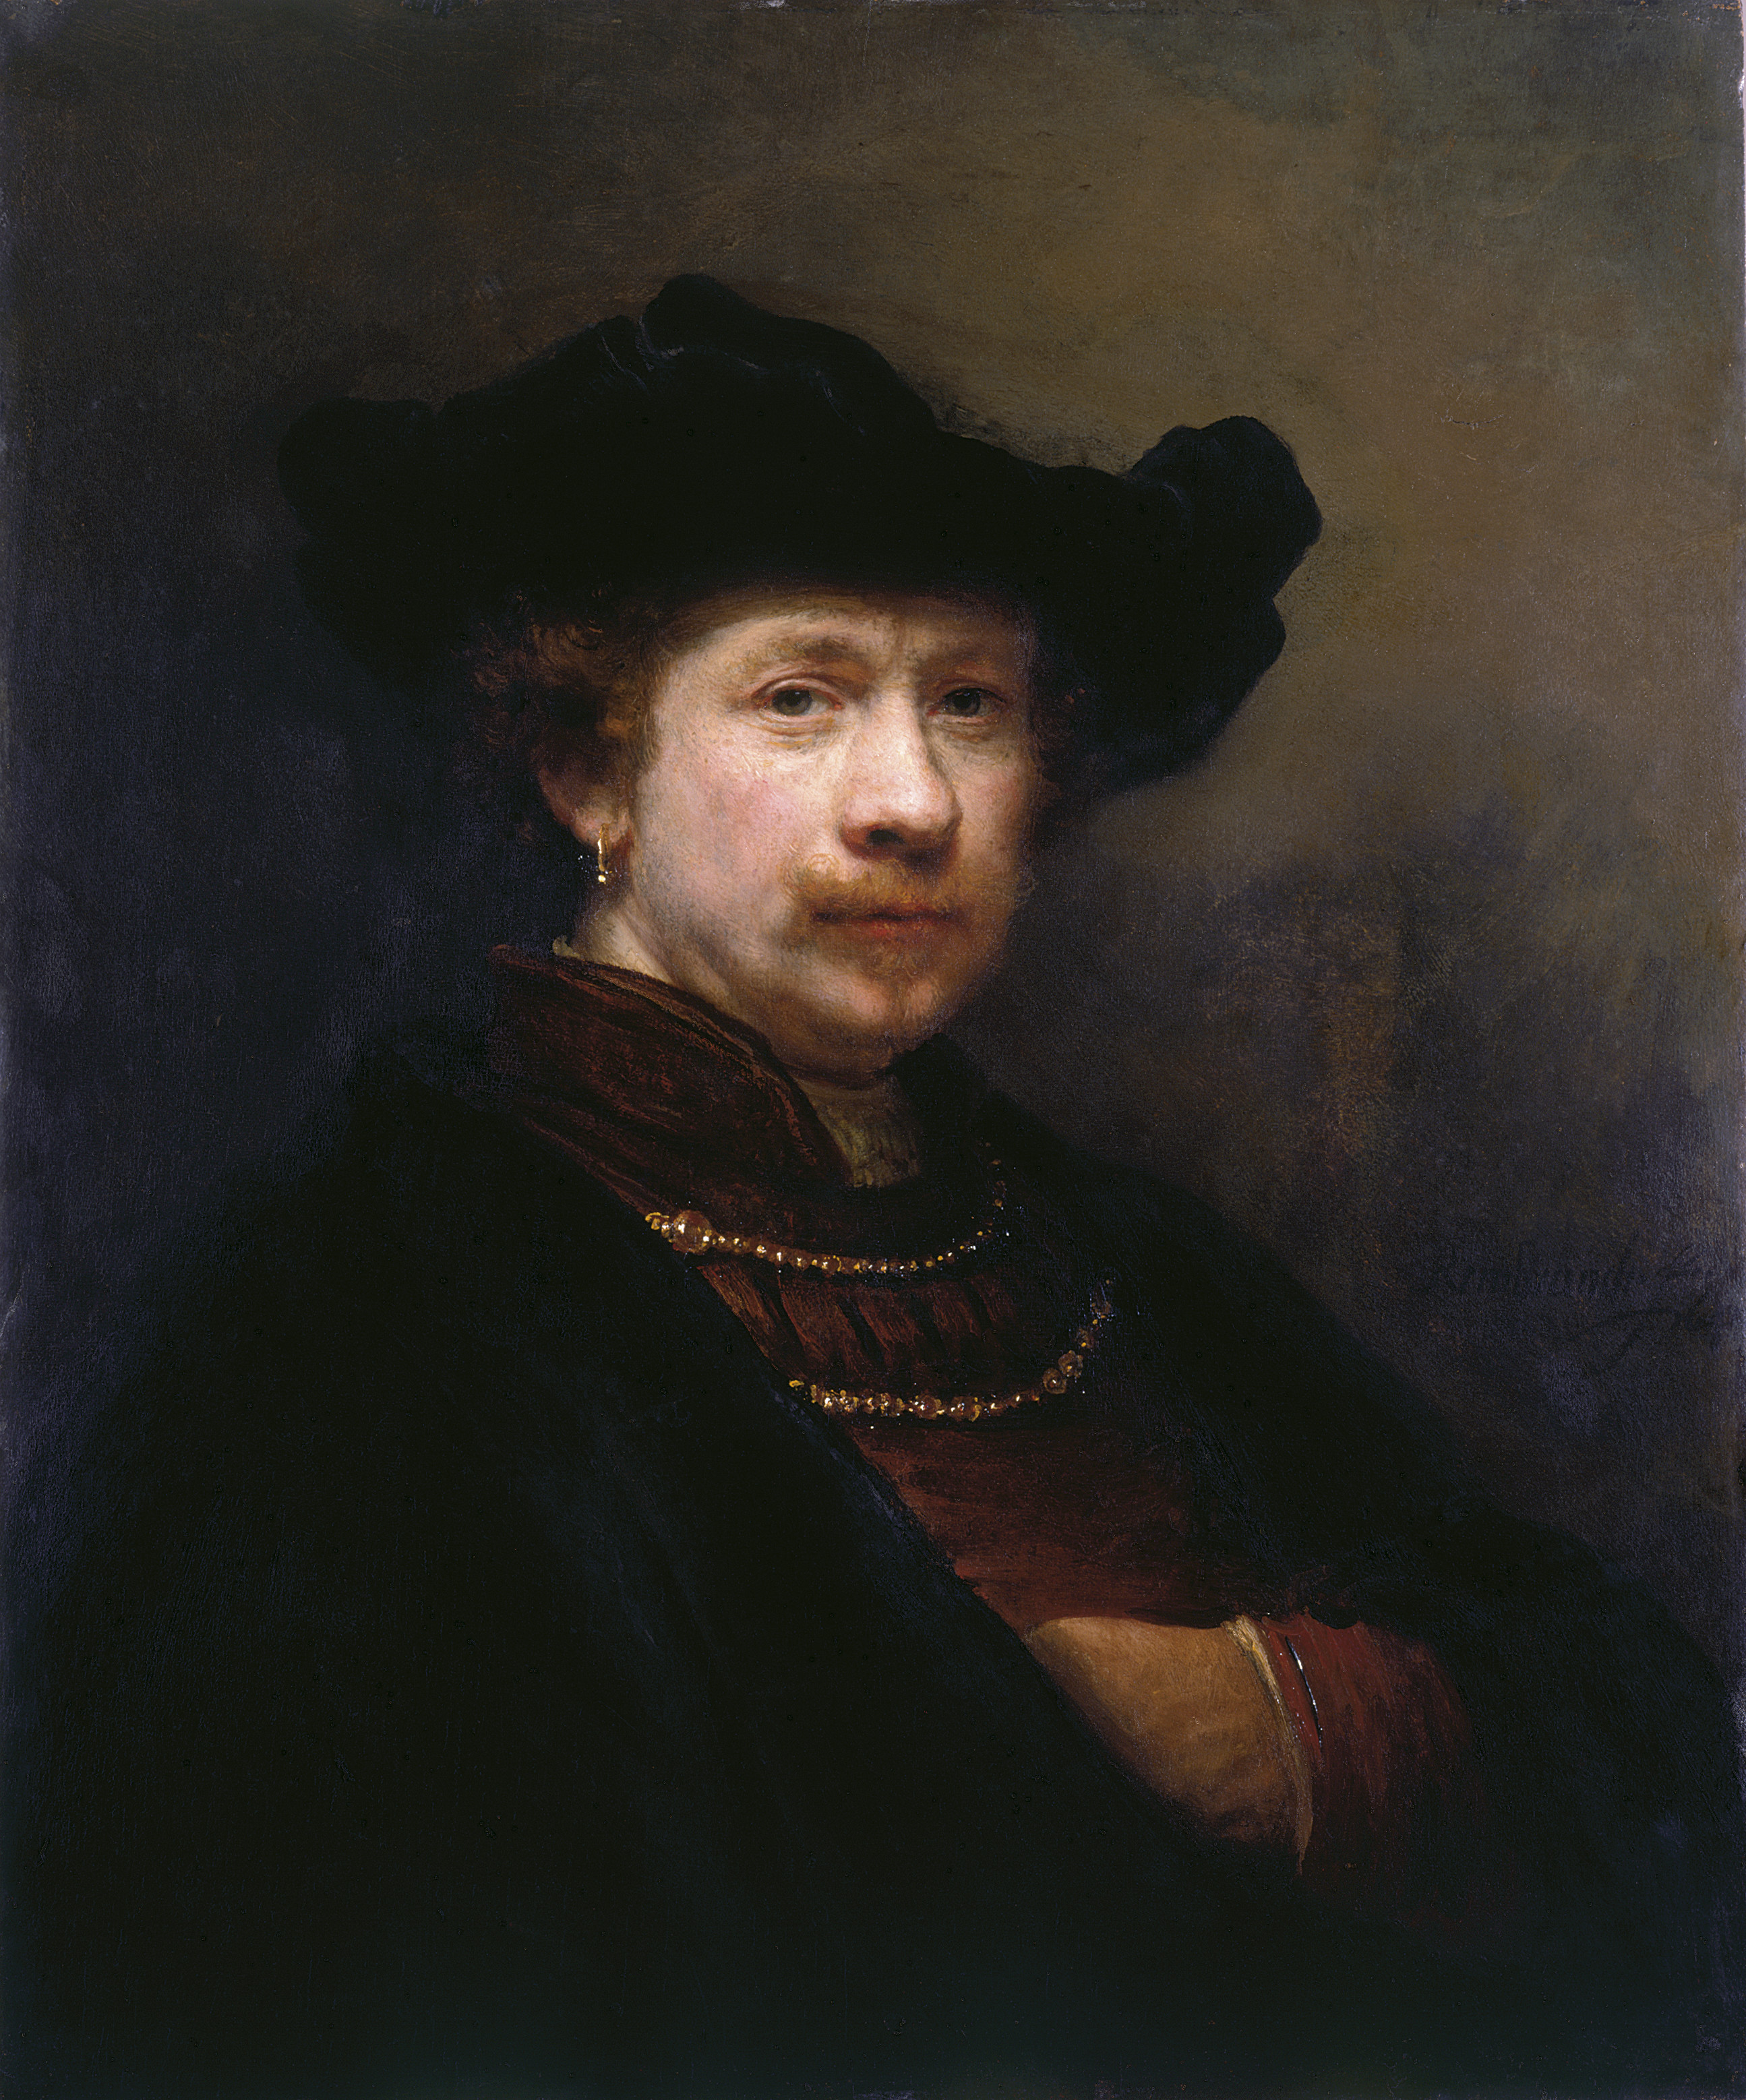 Self Portrait in a Flat Cap by Rembrandt van Rijn - 1642 